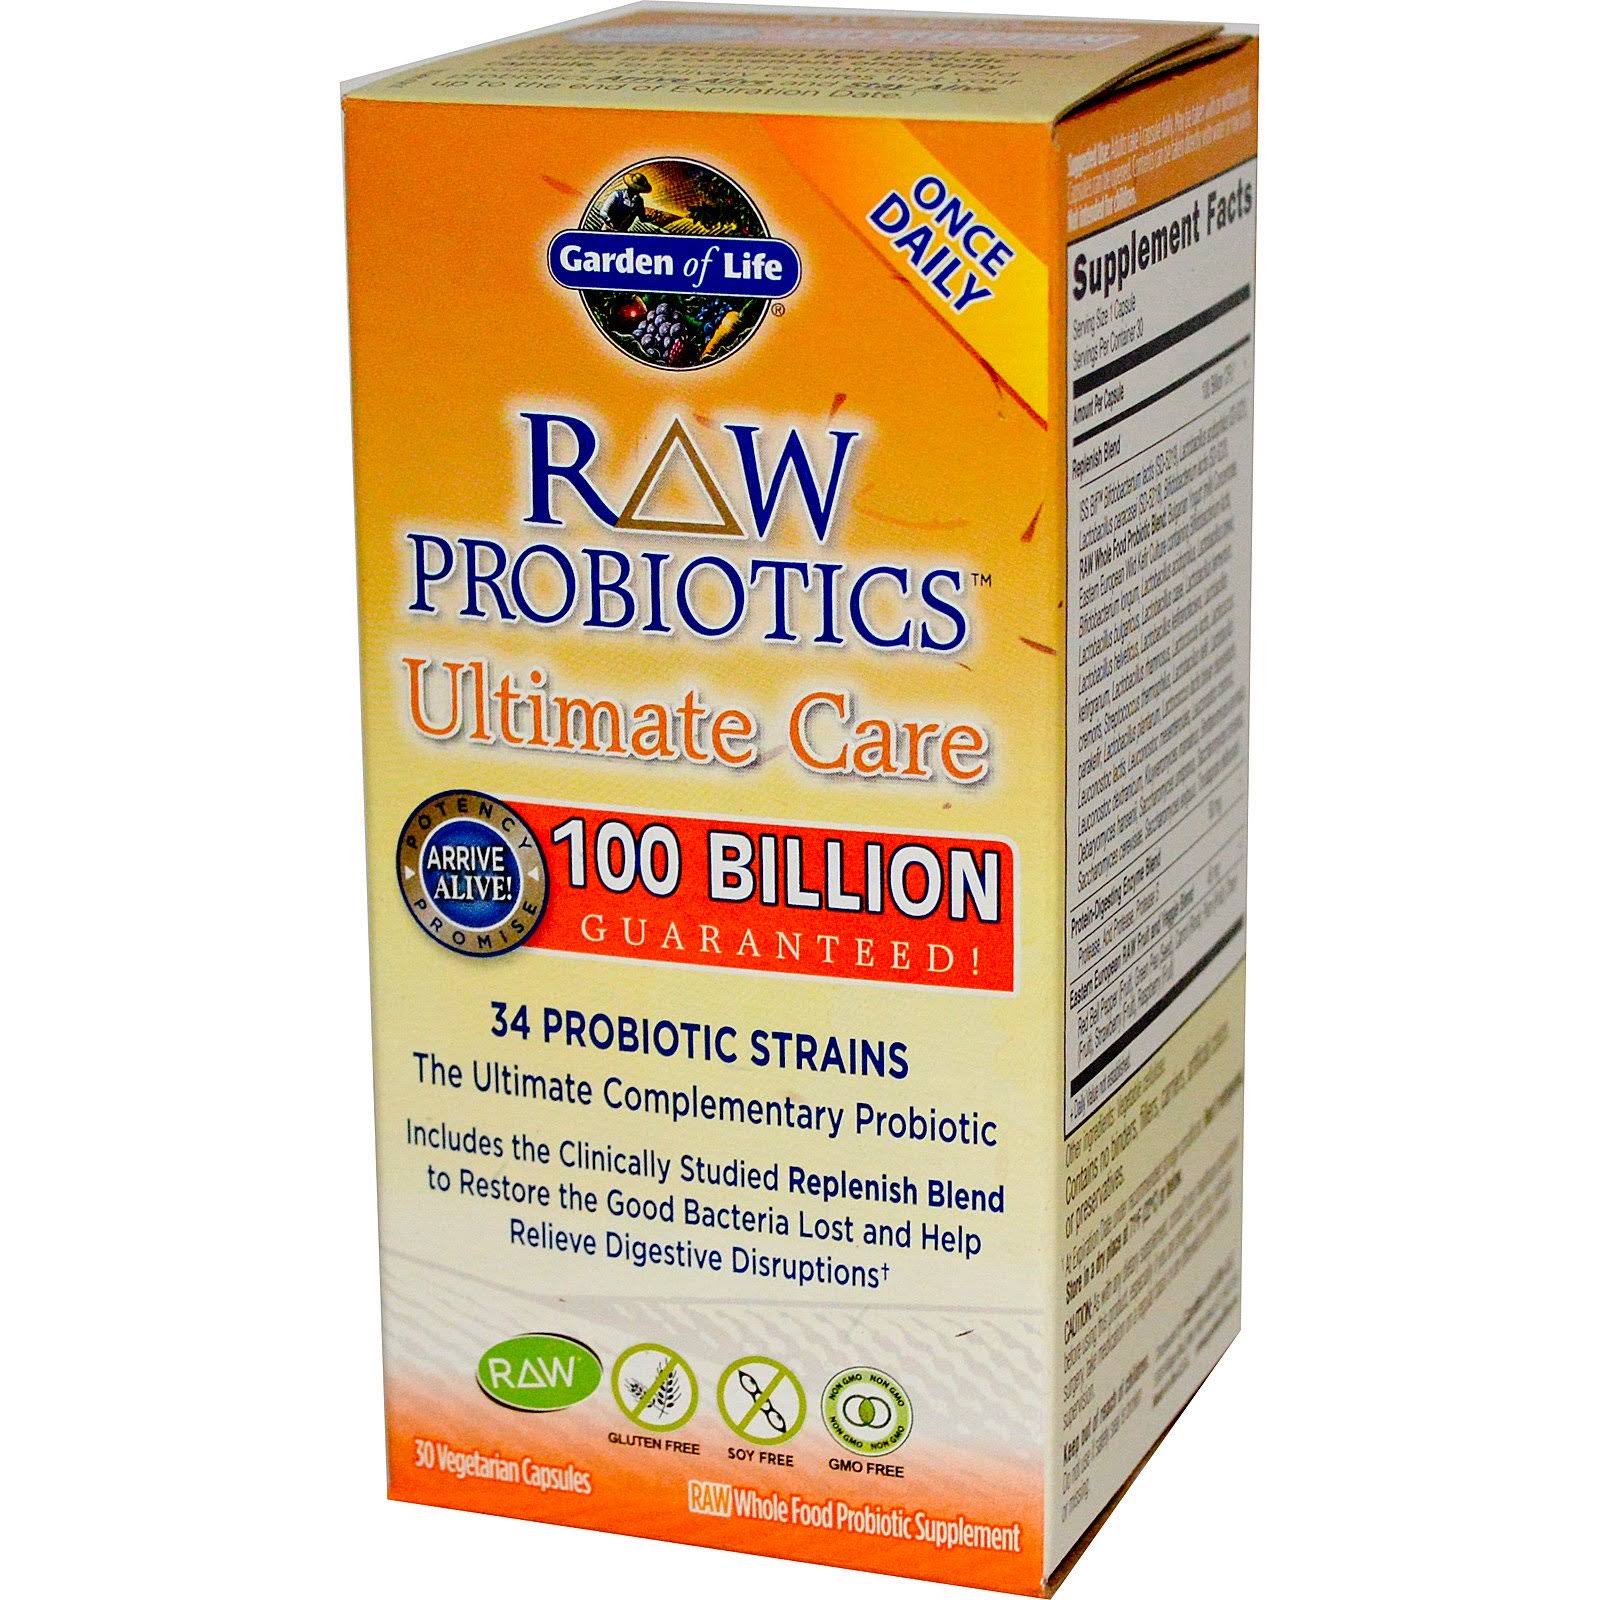 Garden of Life Raw Probiotics Ultimate Care Probiotic Supplement - 30 Capsules